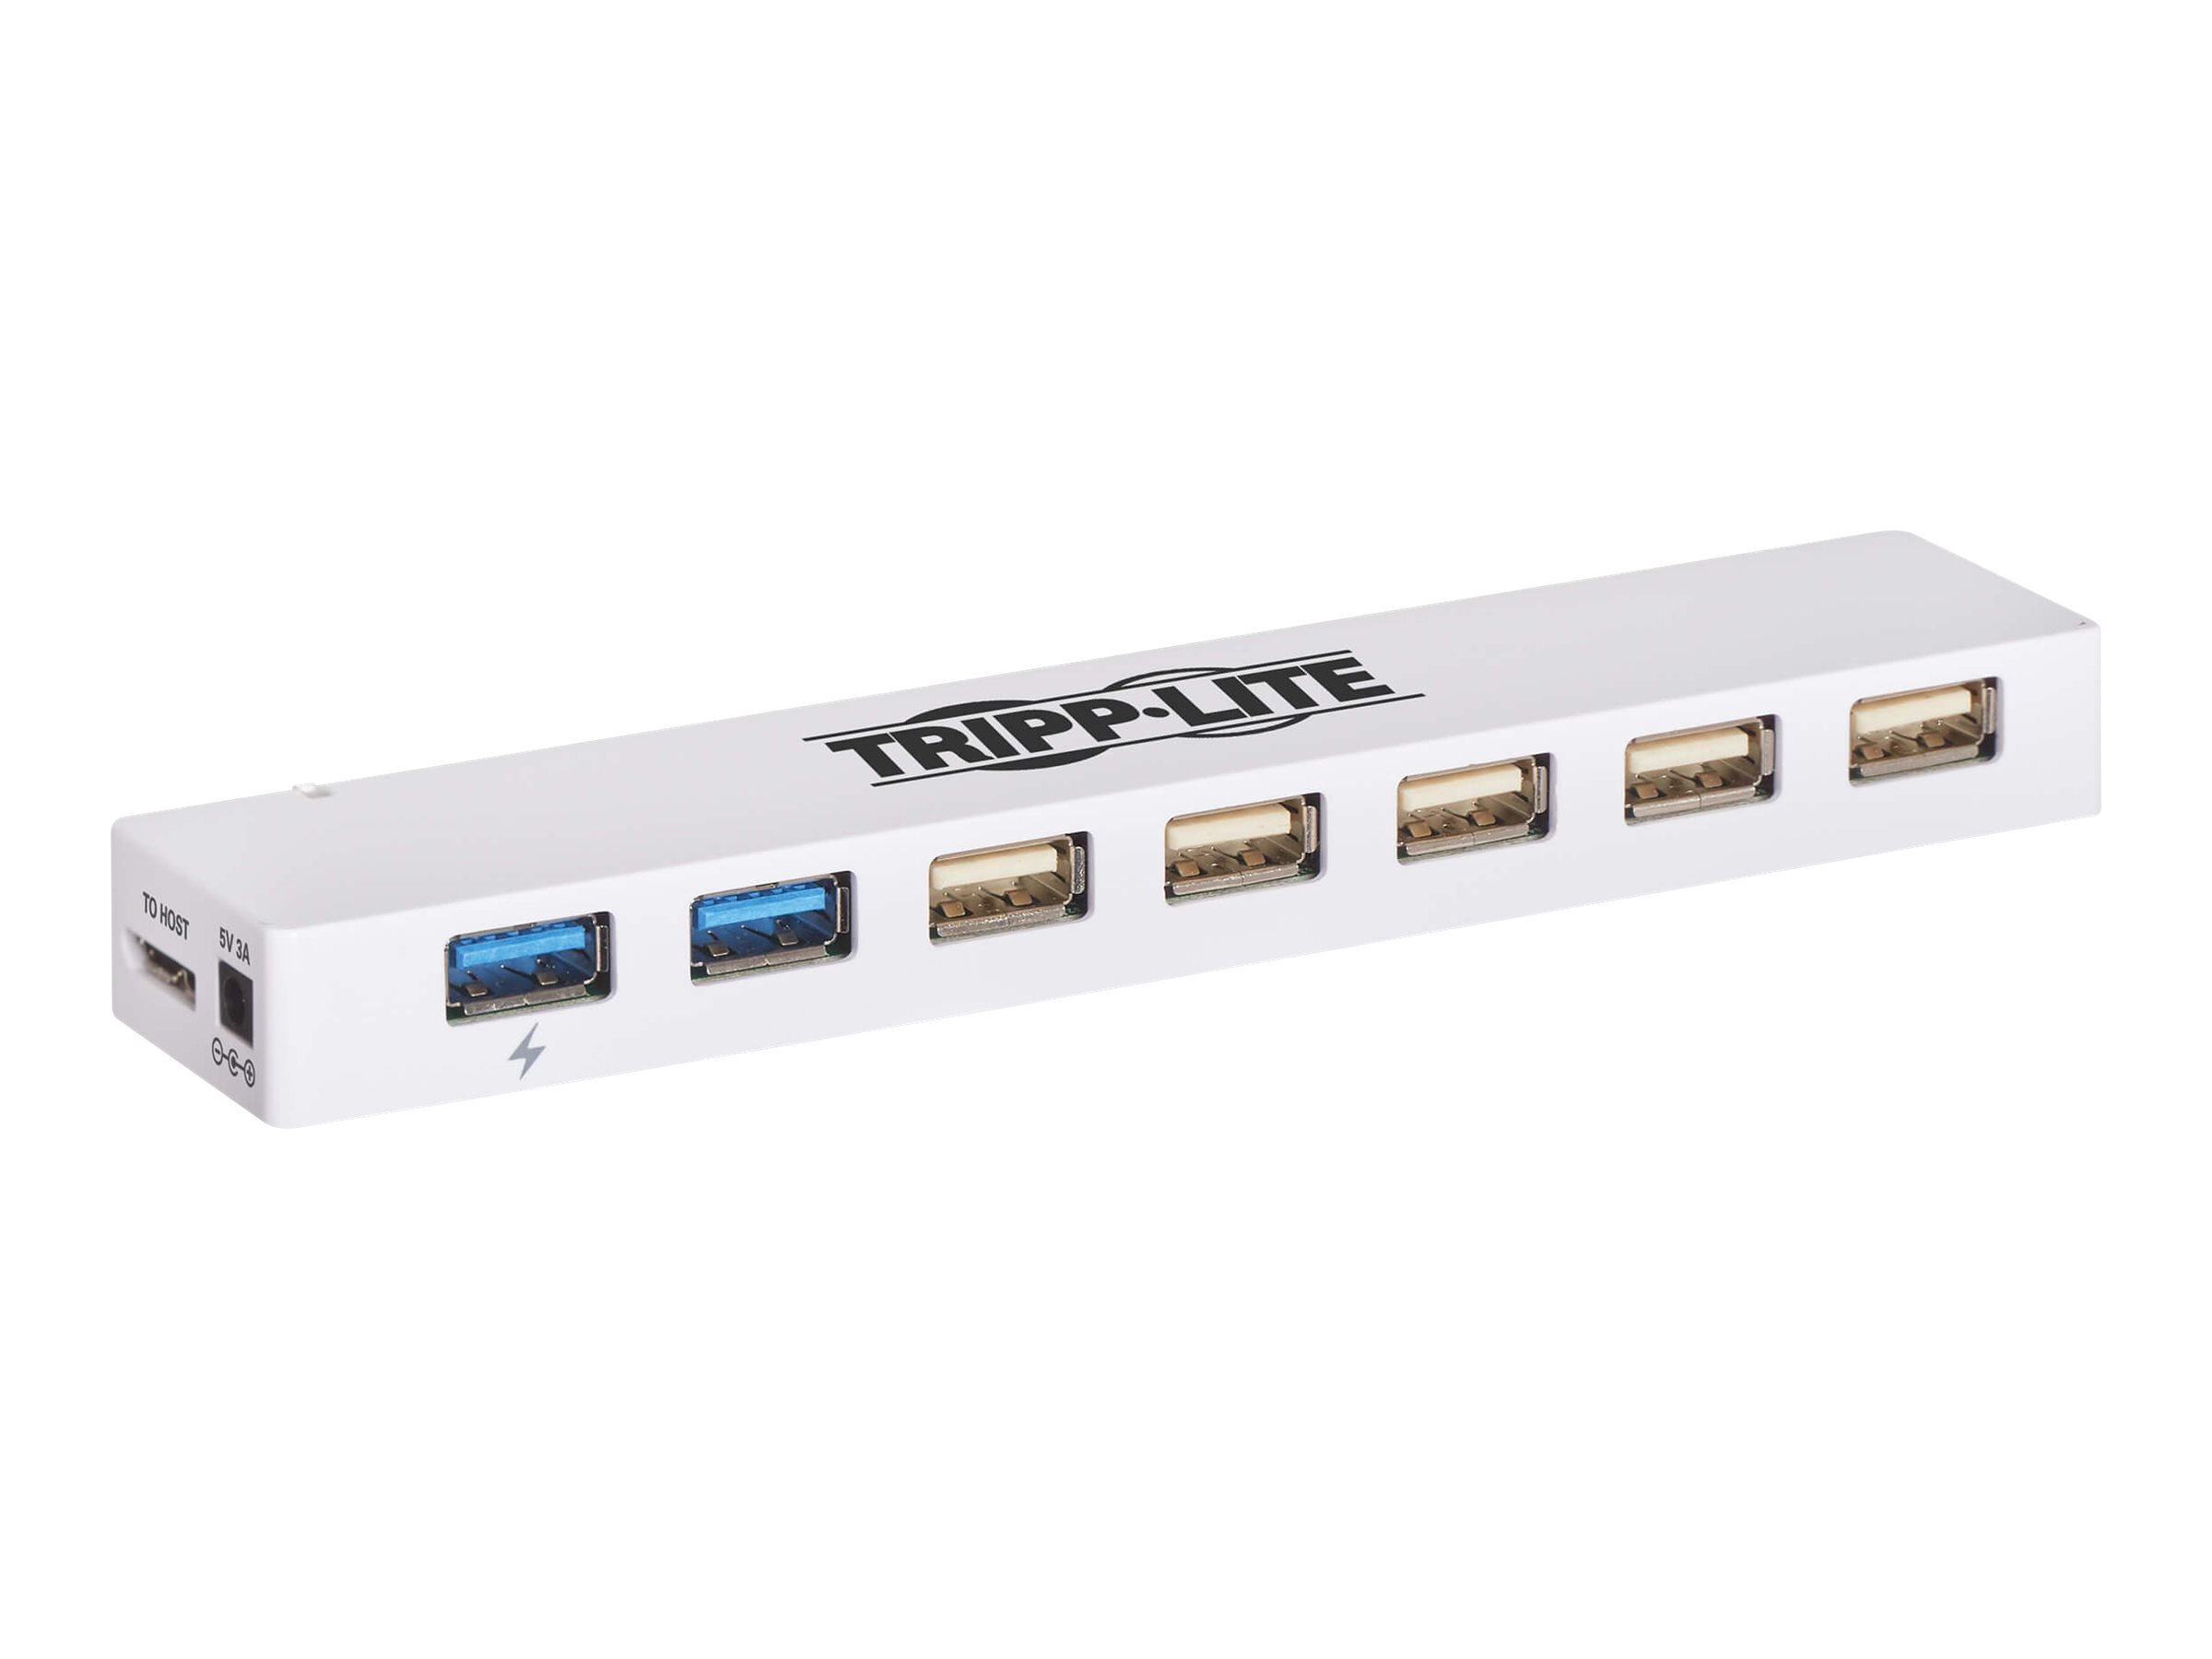 Tripp Lite 7-Port USB 3.0 / USB 2.0 Combo Hub - USB Charging, 2 USB 3.0 & 5 USB 2.0 Ports - Hub - 2 x SuperSpeed USB 3.0 + 5 x U